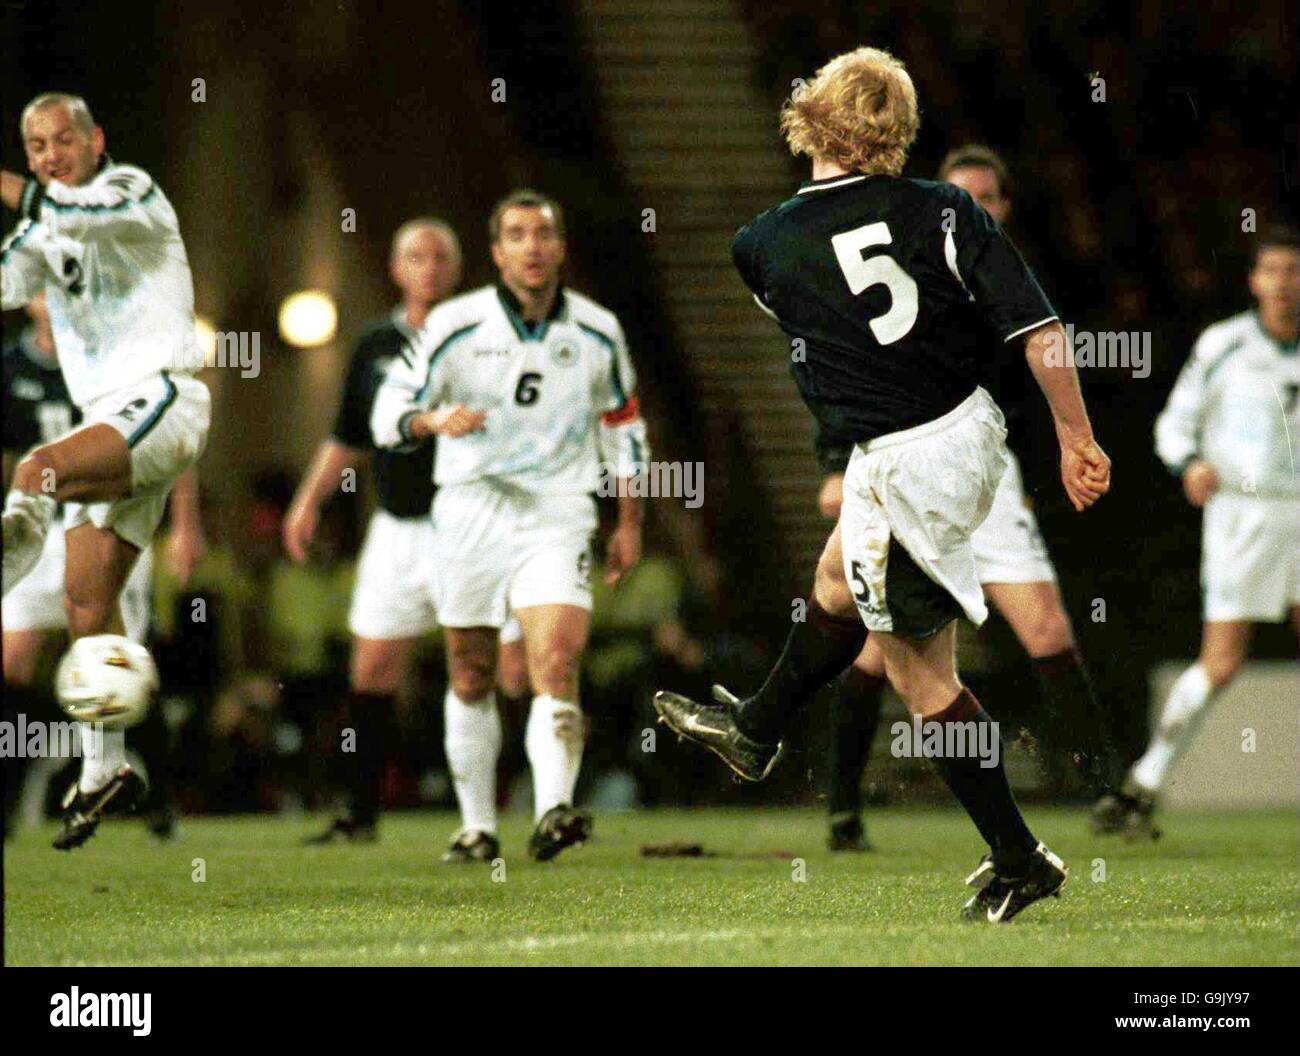 Calcio - Coppa del mondo 2002 qualificatore - Gruppo sei - Scozia / San Marino. La scozzese Colin Hendry spara nel secondo obiettivo contro San Marino Foto Stock